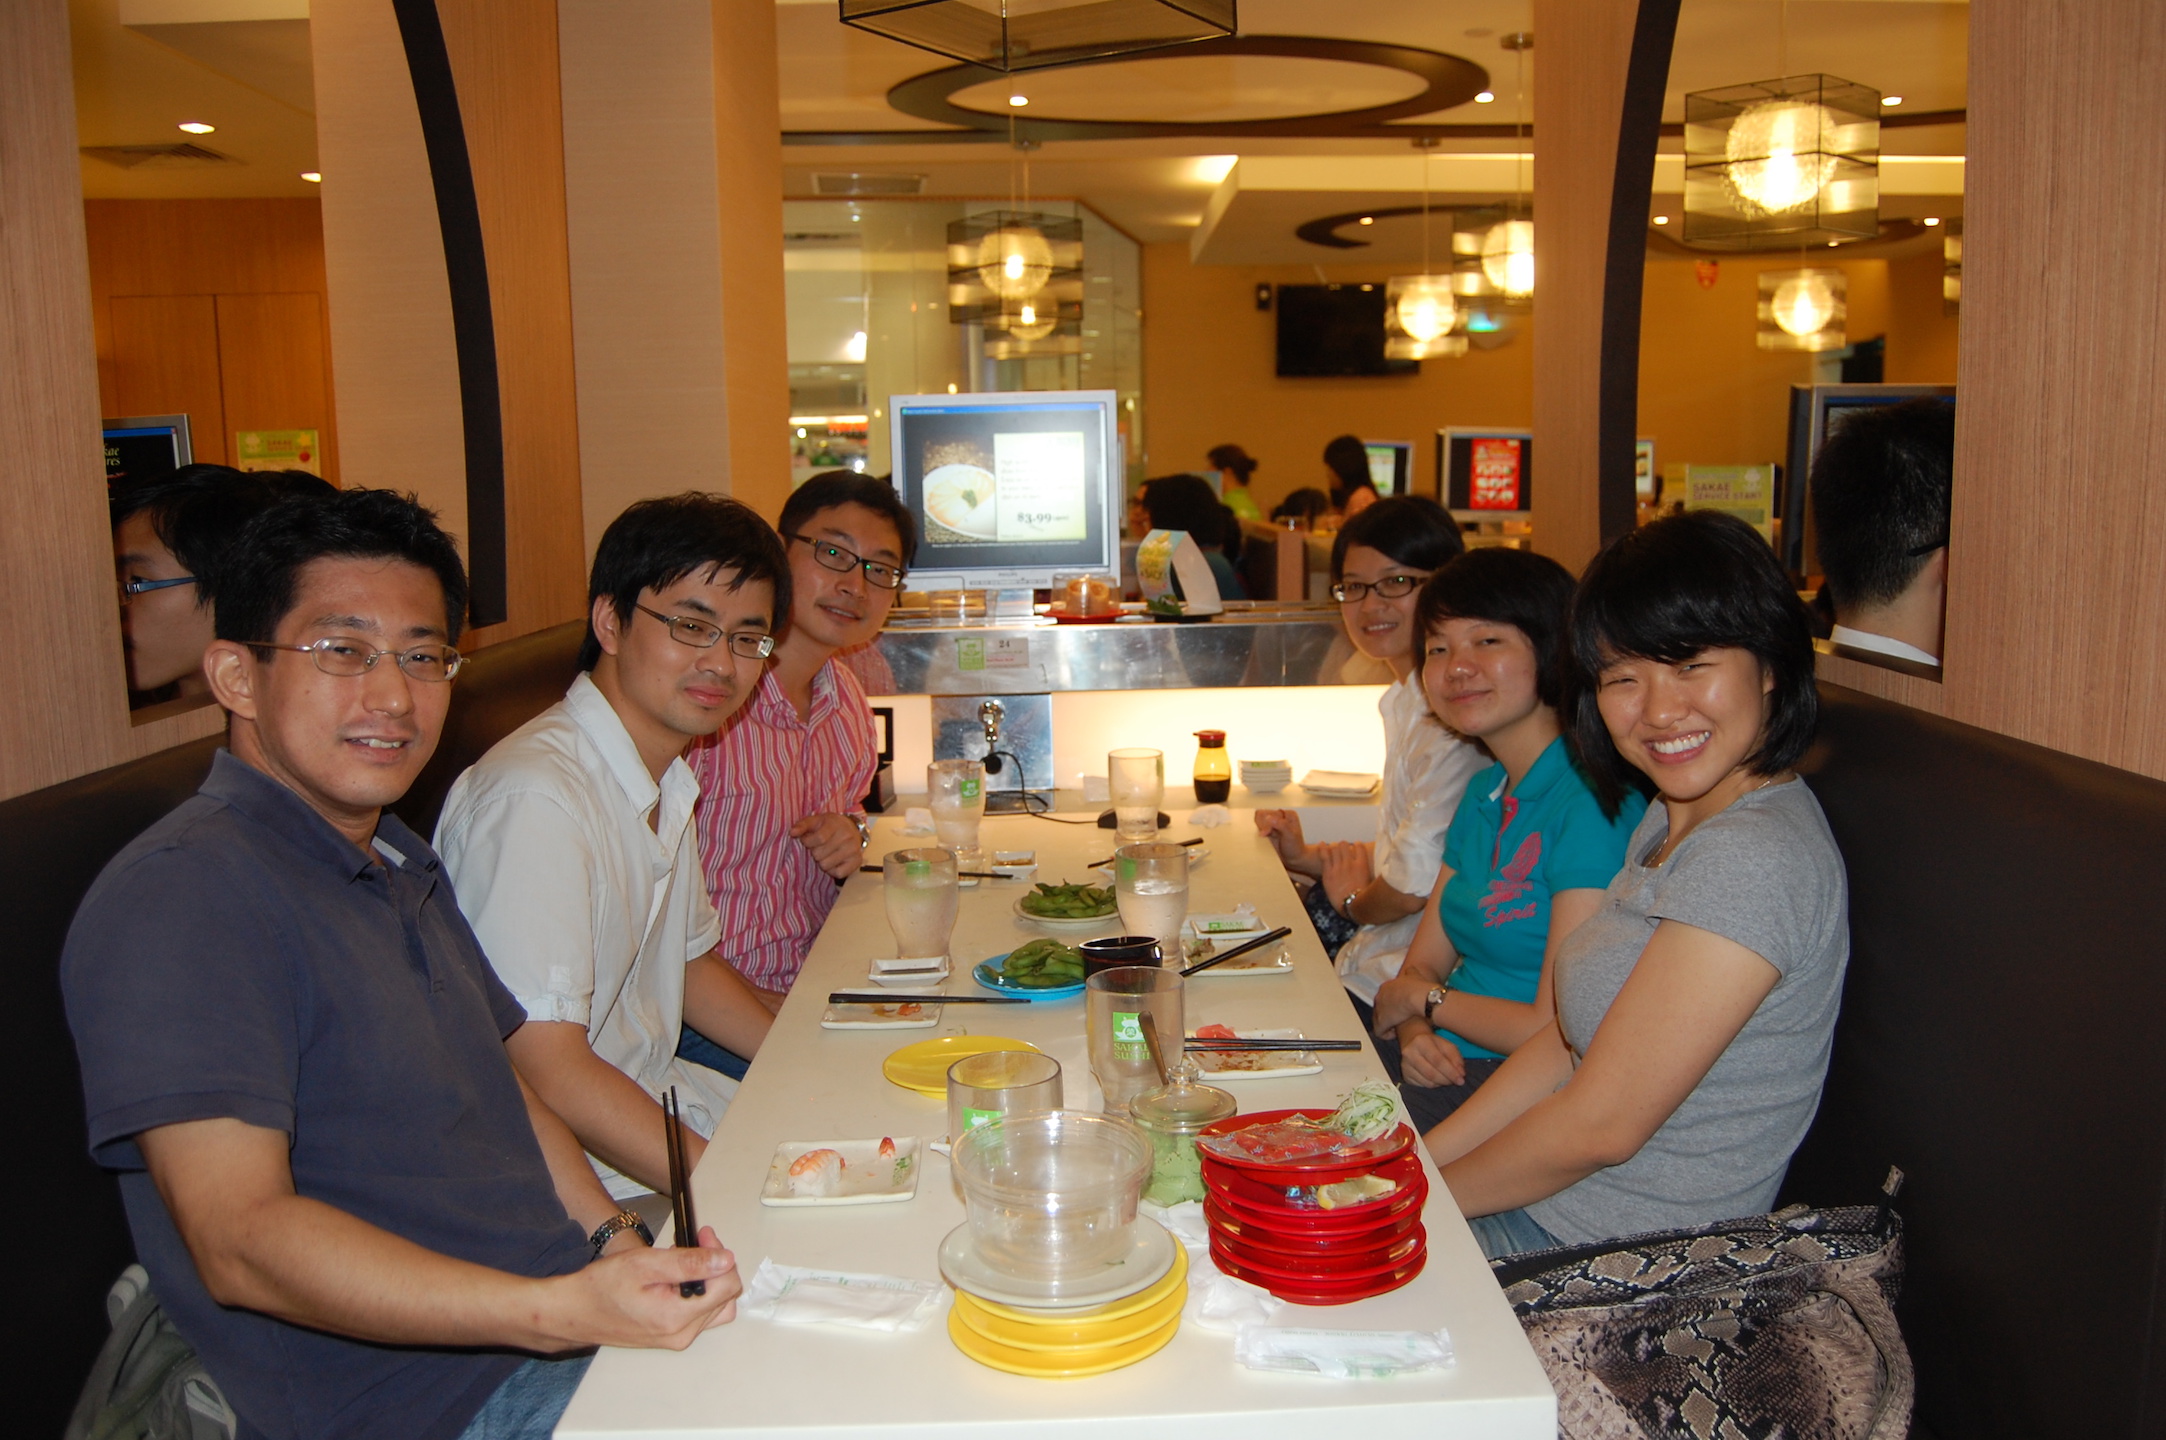 <b>8 Aug 2011 - Sakae Sushi @ CCK Lot 1</b> Left to Right: Kaz, Liner, Ziheng, Zhaoyan, Tao, Tamisa